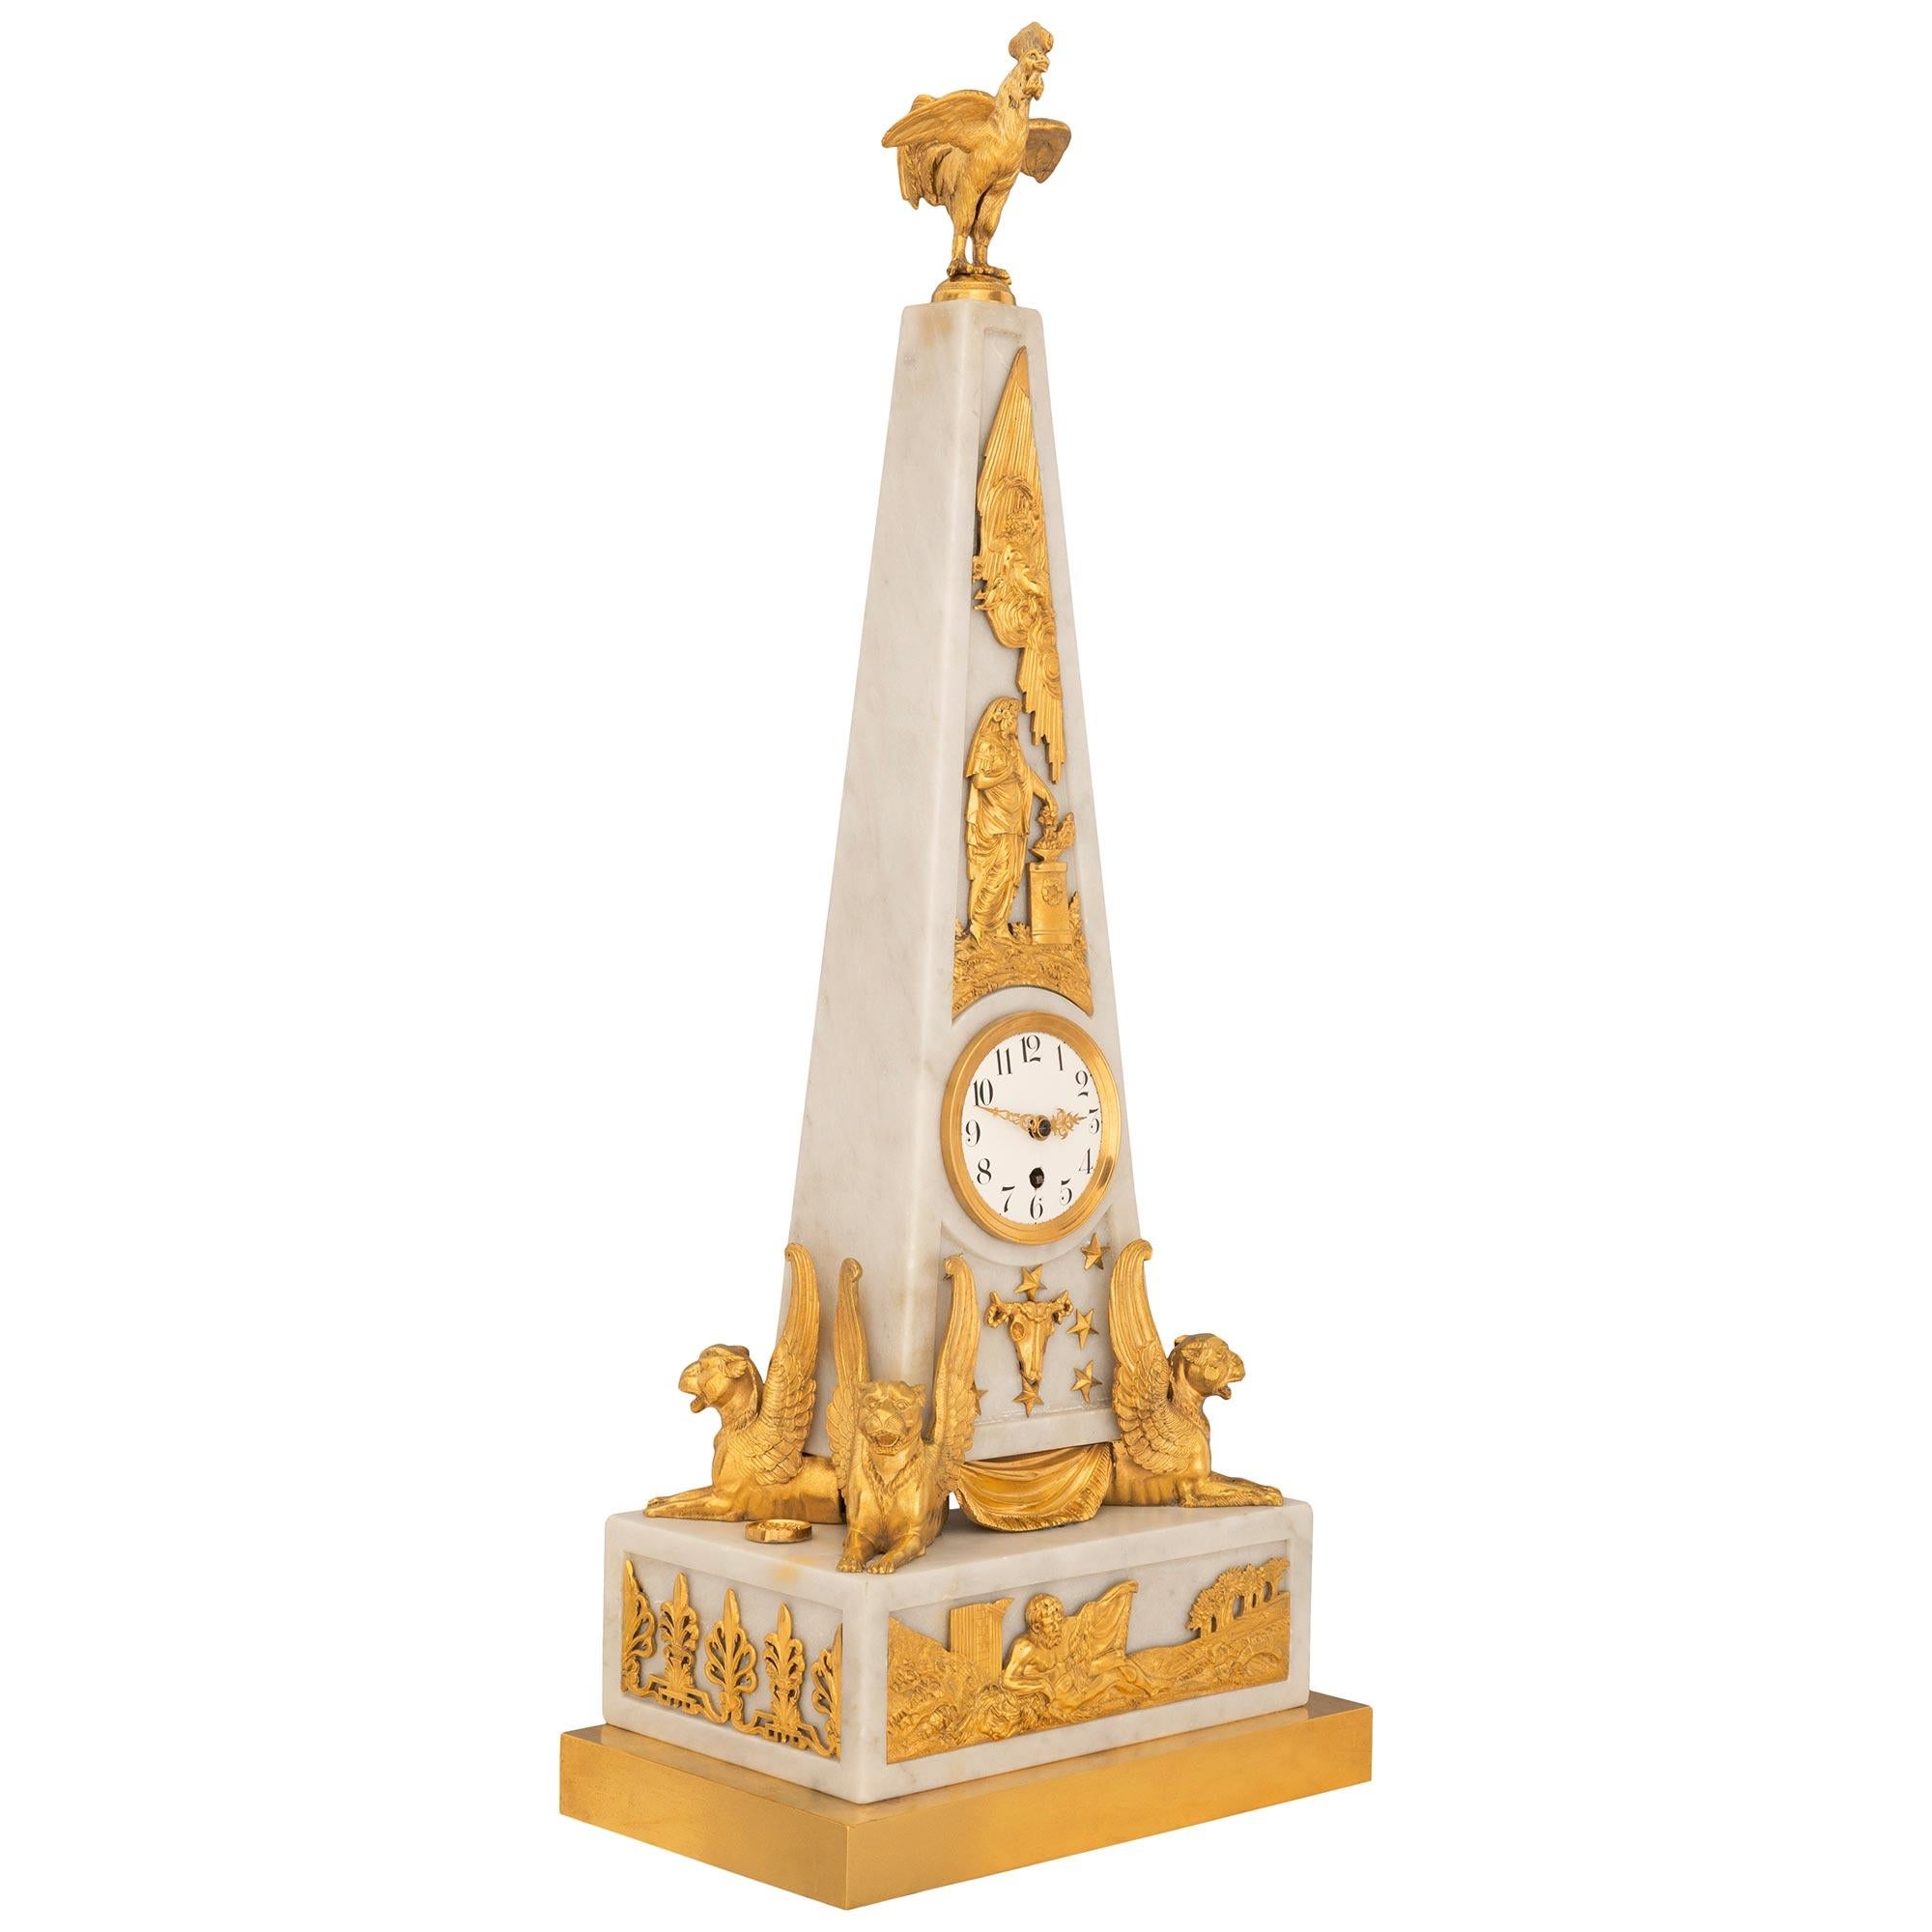 Eine auffallende und einzigartige französische Uhr im neoklassischen Stil des frühen 19. Jahrhunderts aus weißem Carraramarmor und Ormolu in Form eines Obelisken. Die Uhr steht auf einem rechteckigen Sockel aus weißem Carrara-Marmor mit einem dicken